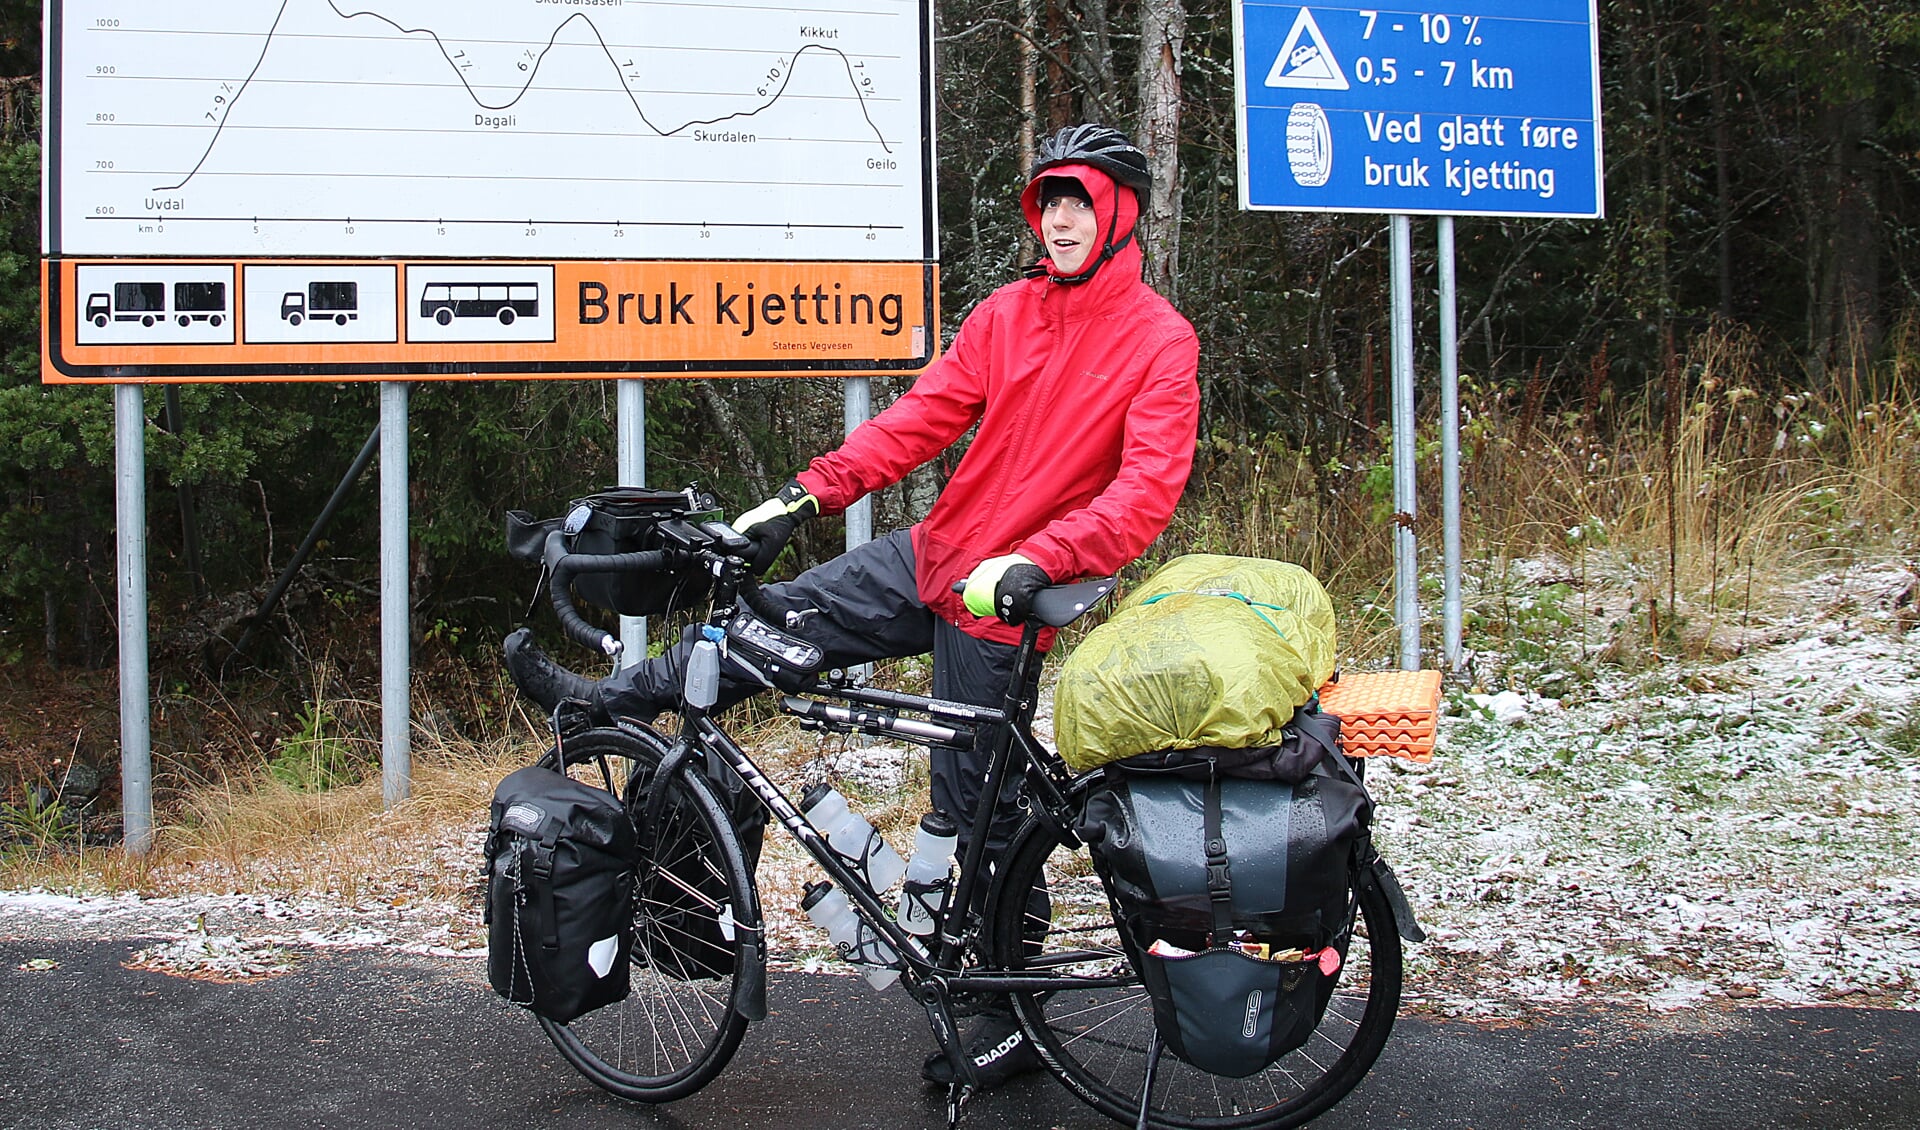 Matthijs Kralt is een mooie fiets ervaring rijker. Voorjaar 2018 volgt het andere traject. 